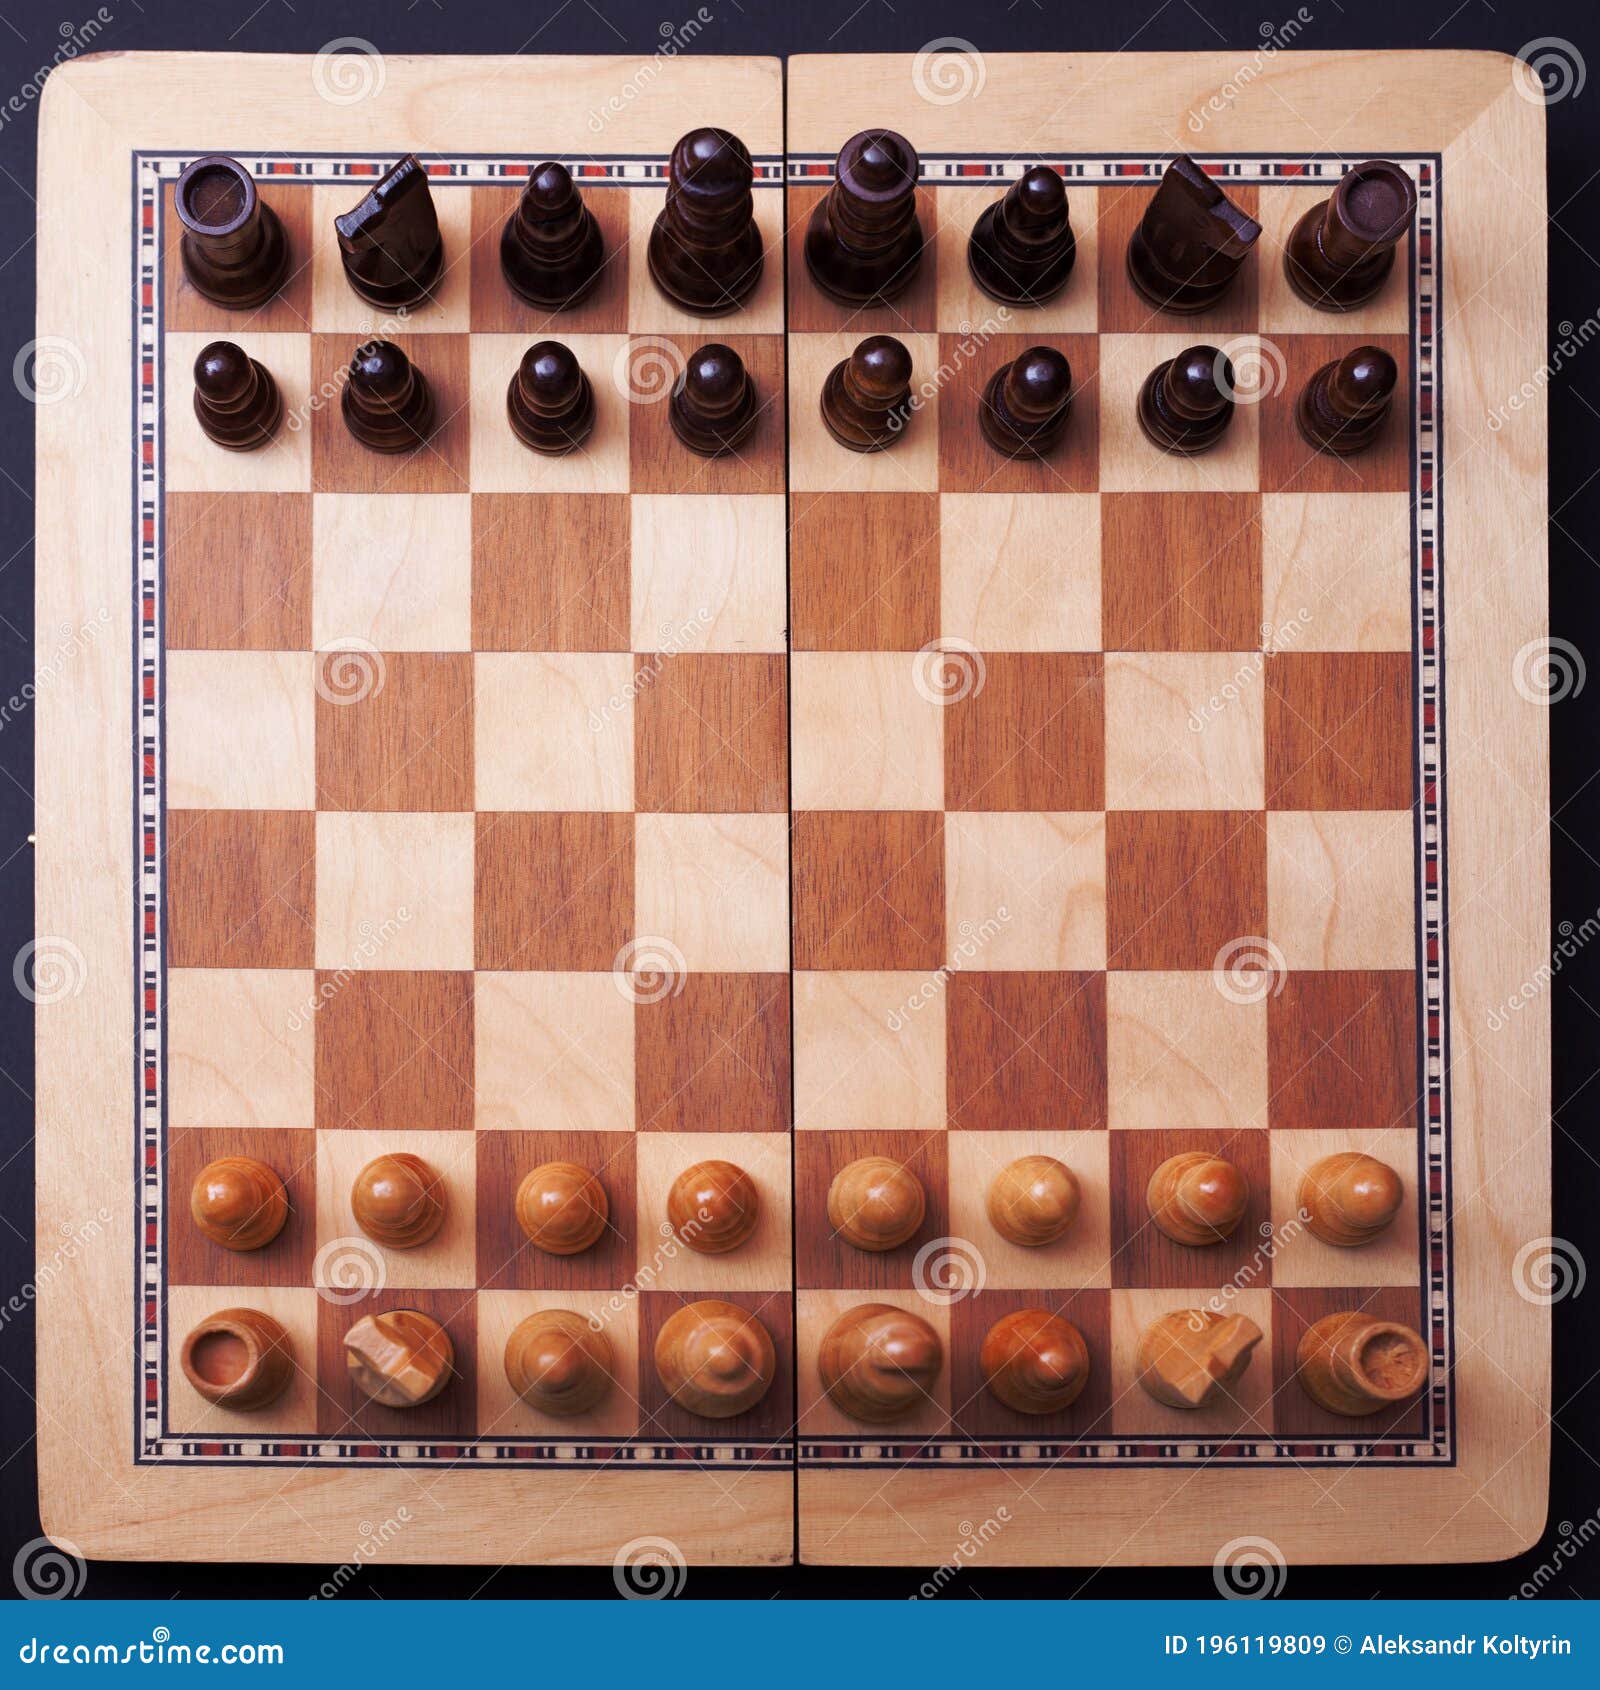 Um jogo de xadrez com o rei no topo.